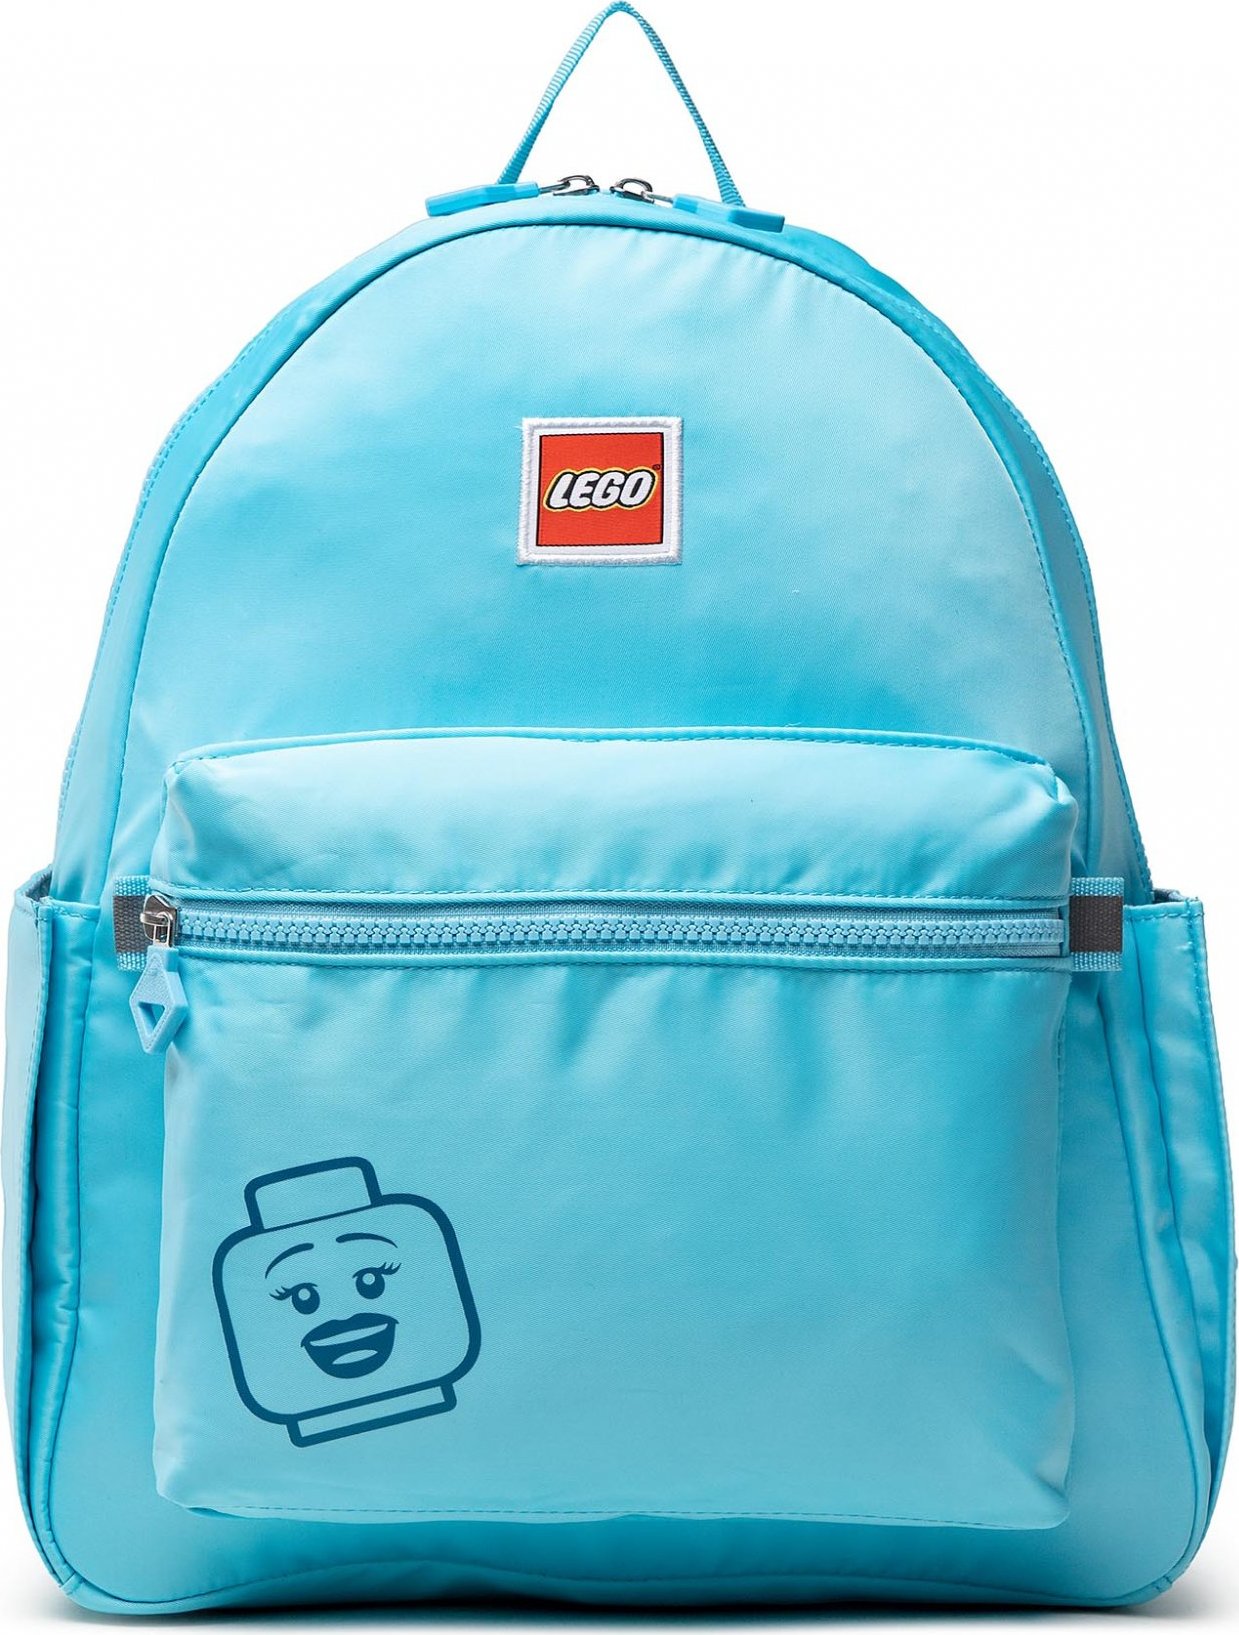 LEGO Tribini Joy Backpack Large 20130-1936